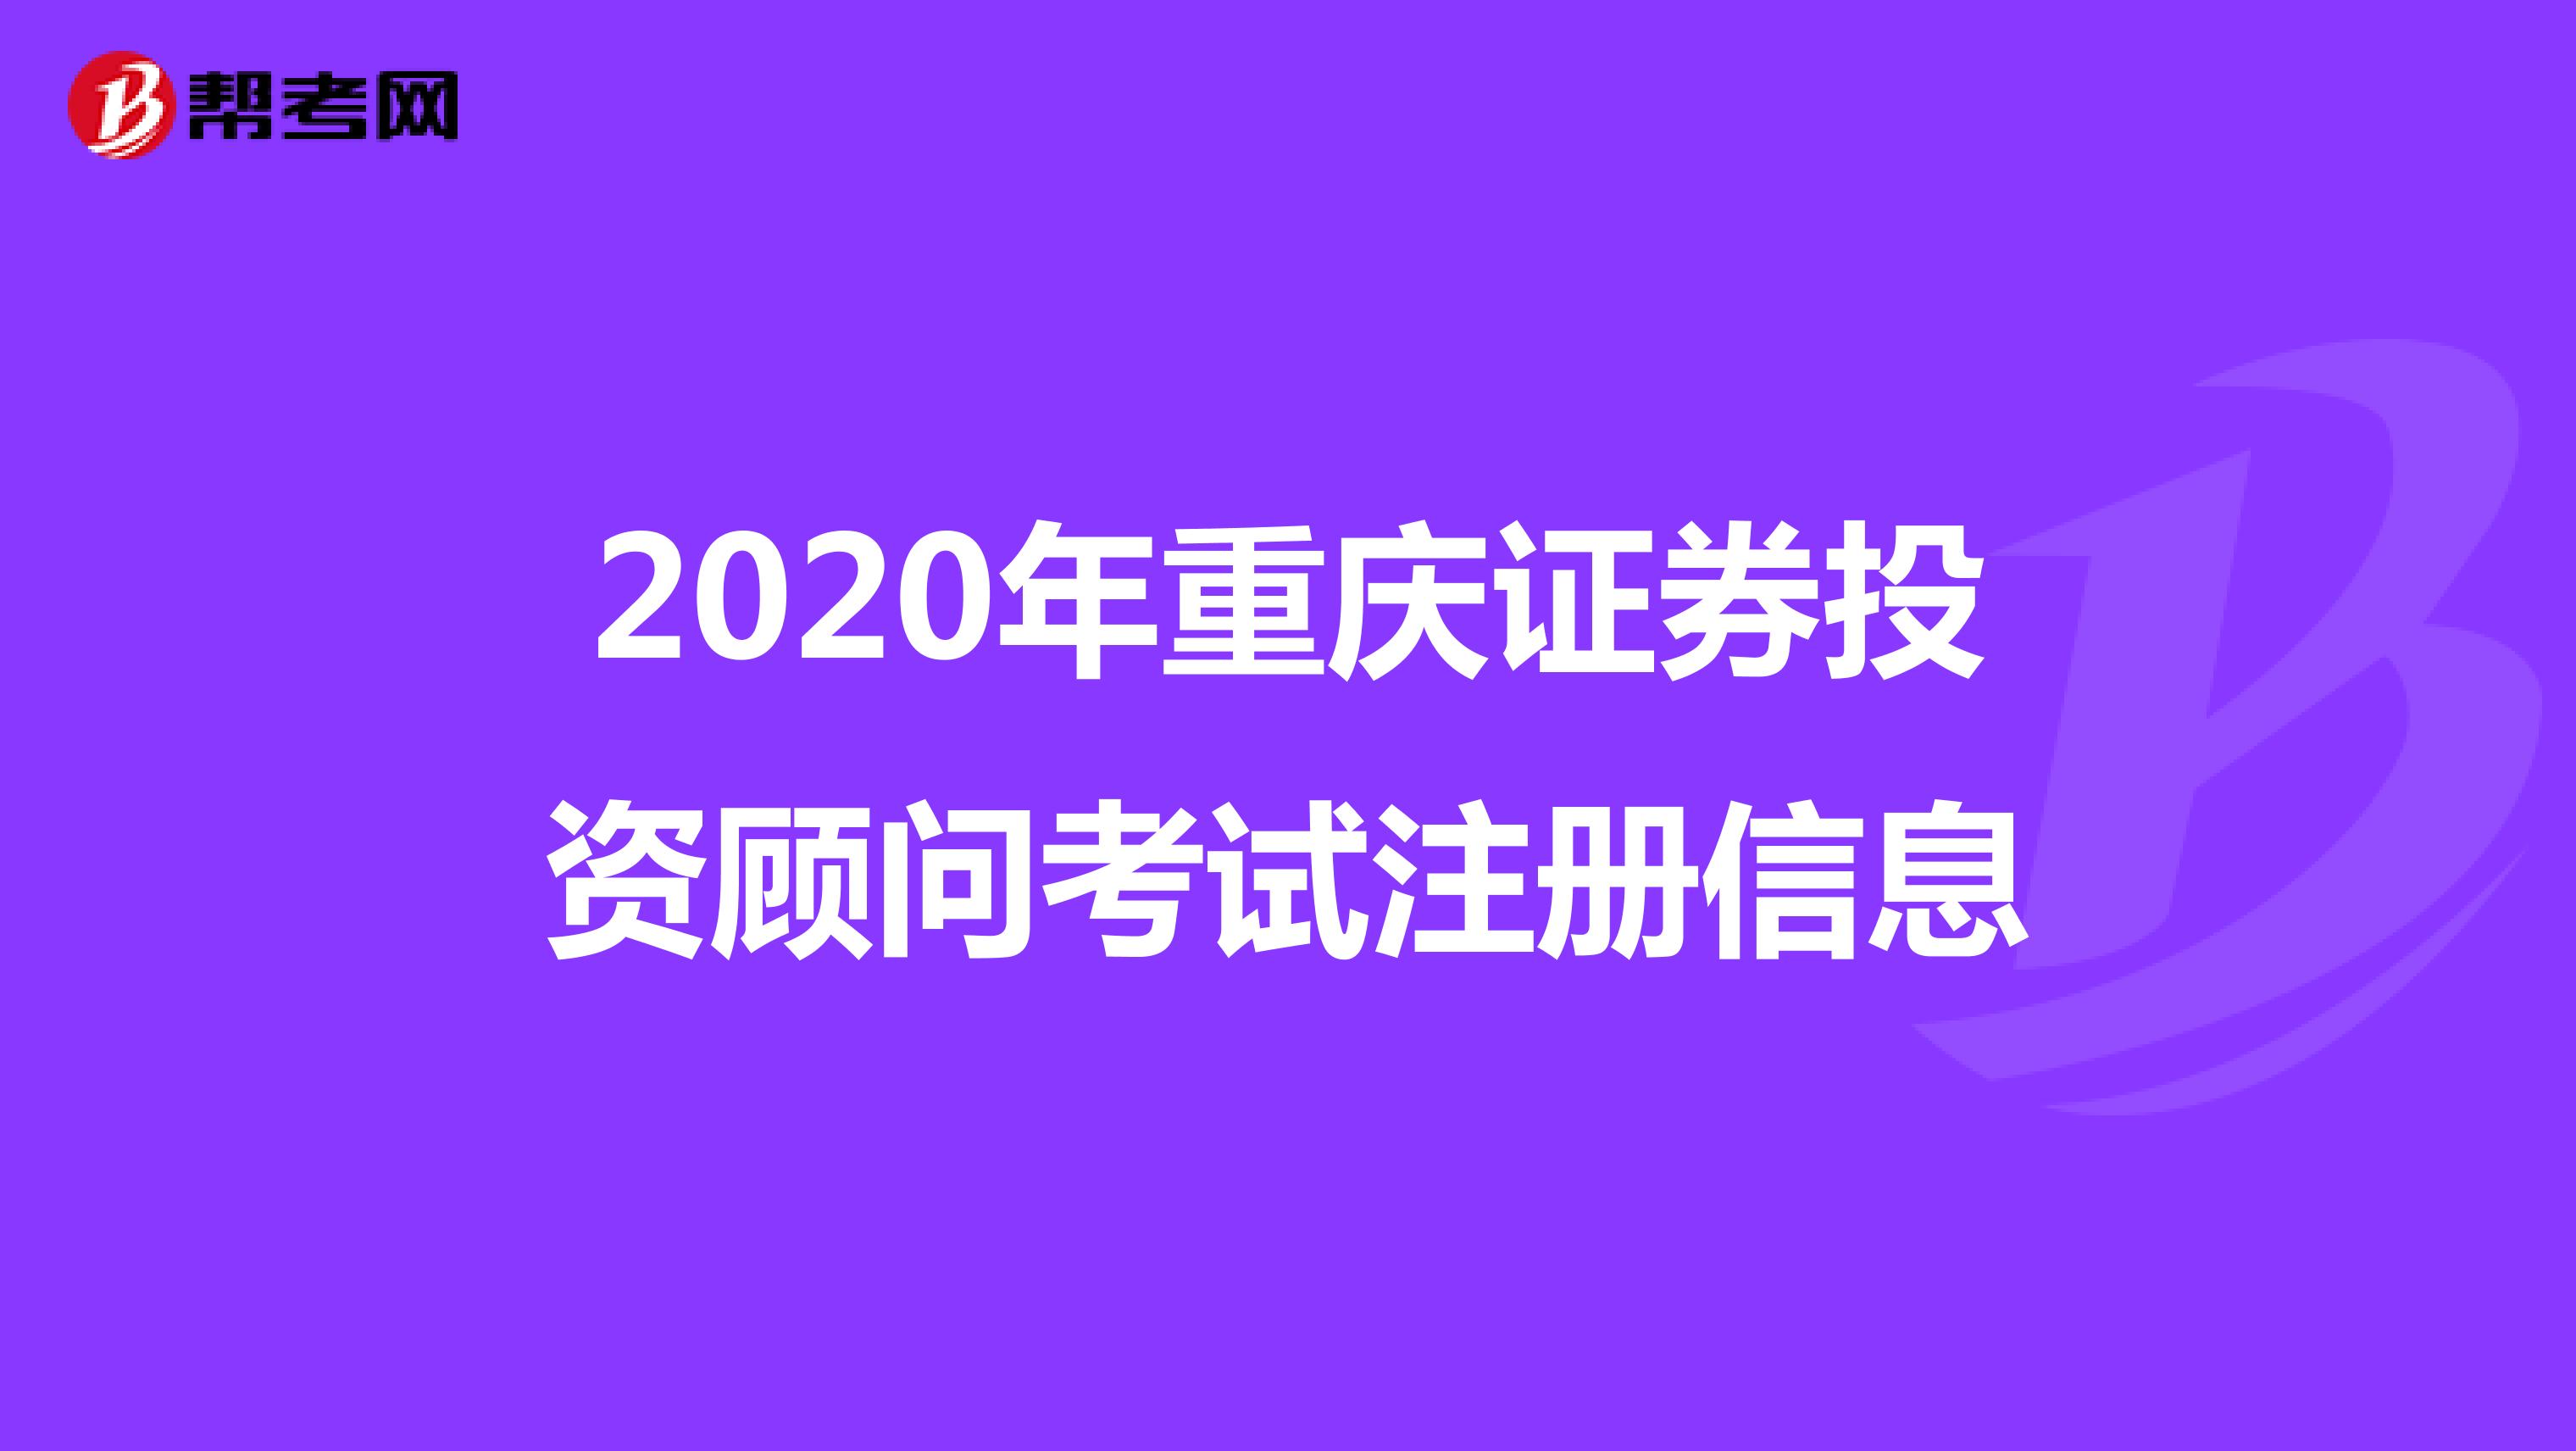 2020年重庆证券投资顾问考试注册信息